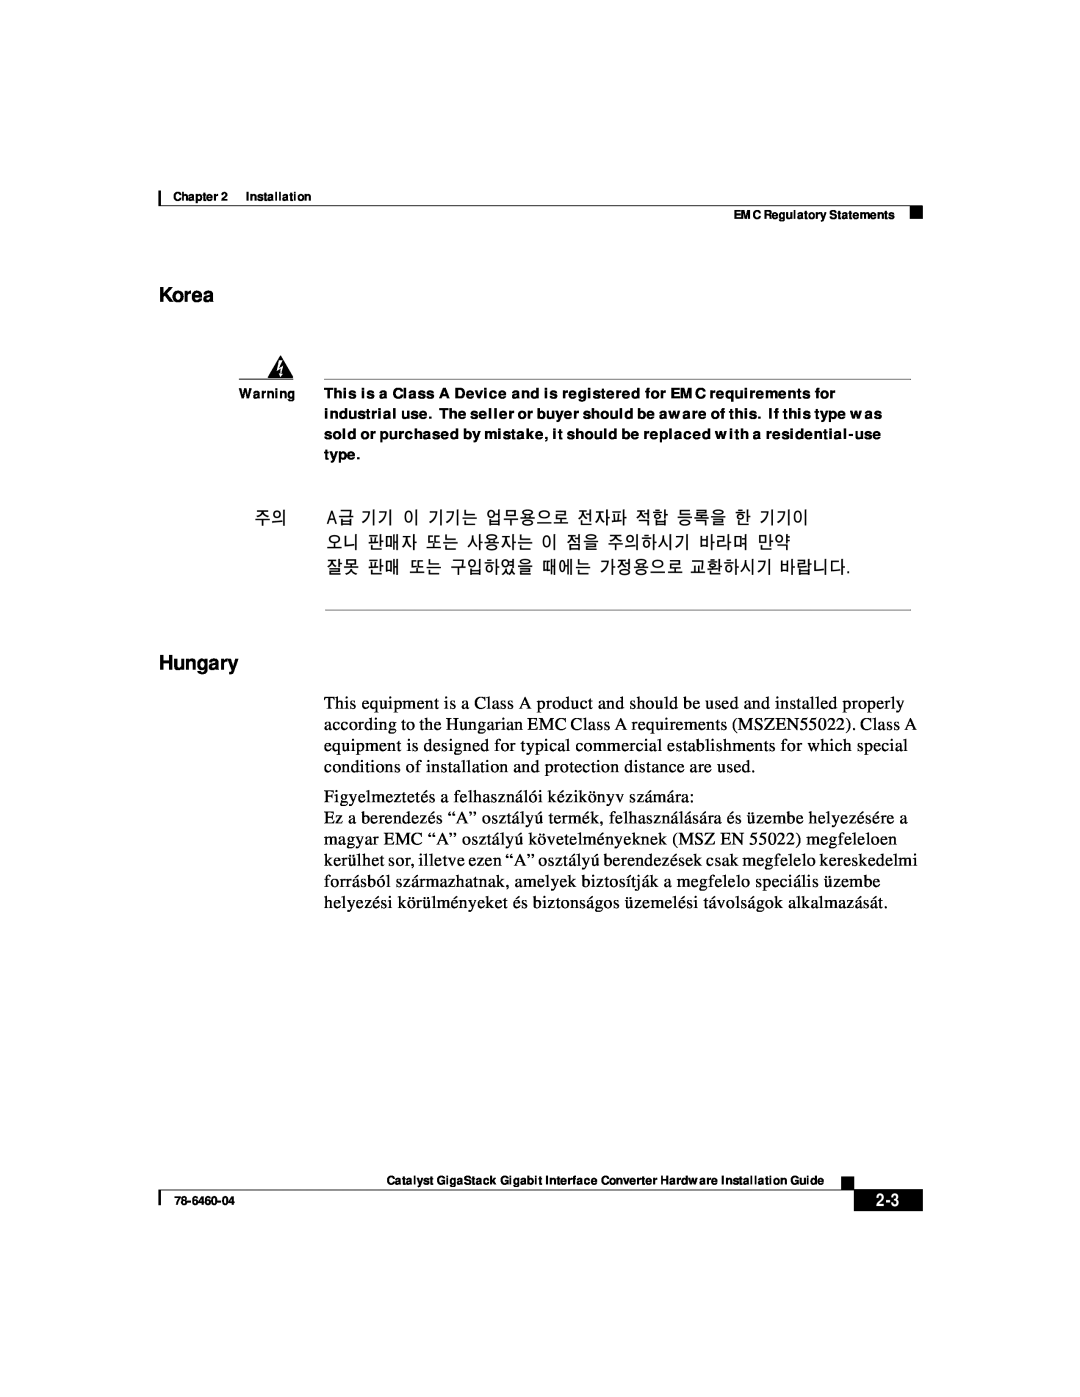 Cisco Systems WS-X3500-XL manual Korea, Hungary 